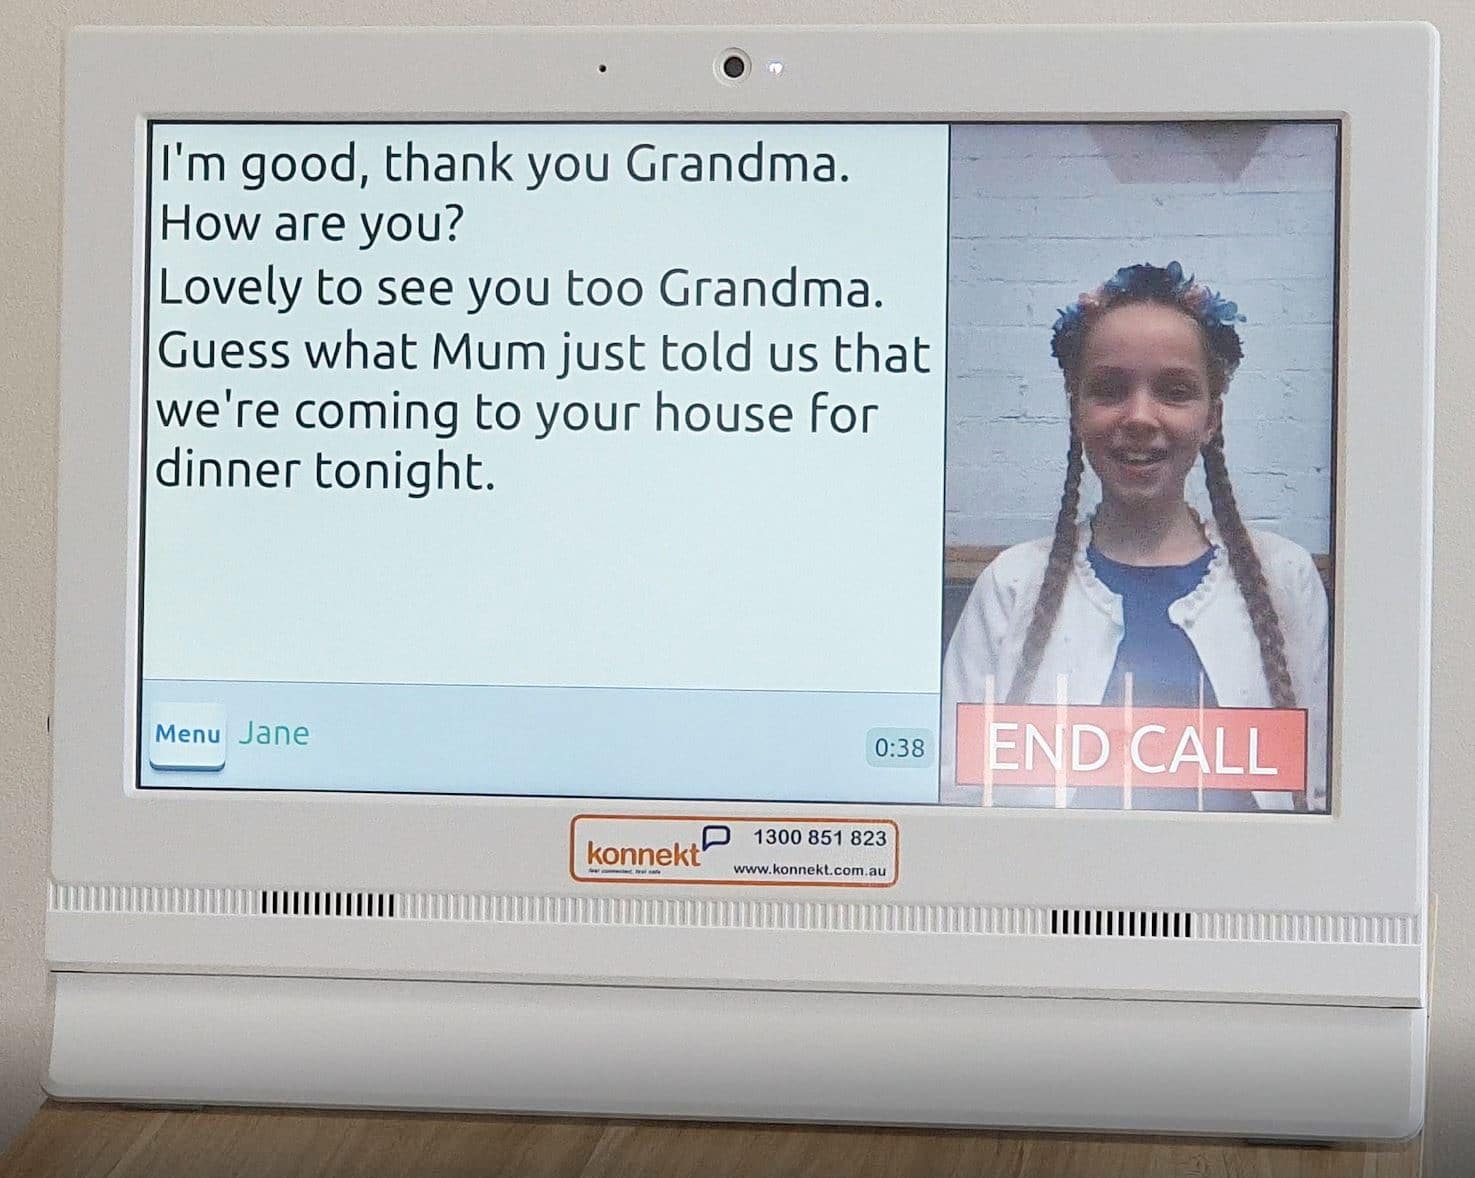 Konnekt Bildtelefon mit Untertiteln bei einem Videoanruf mit Untertiteln mit einem jungen Mädchen, wobei der Bildschirm das Gespräch in großem Text anzeigt